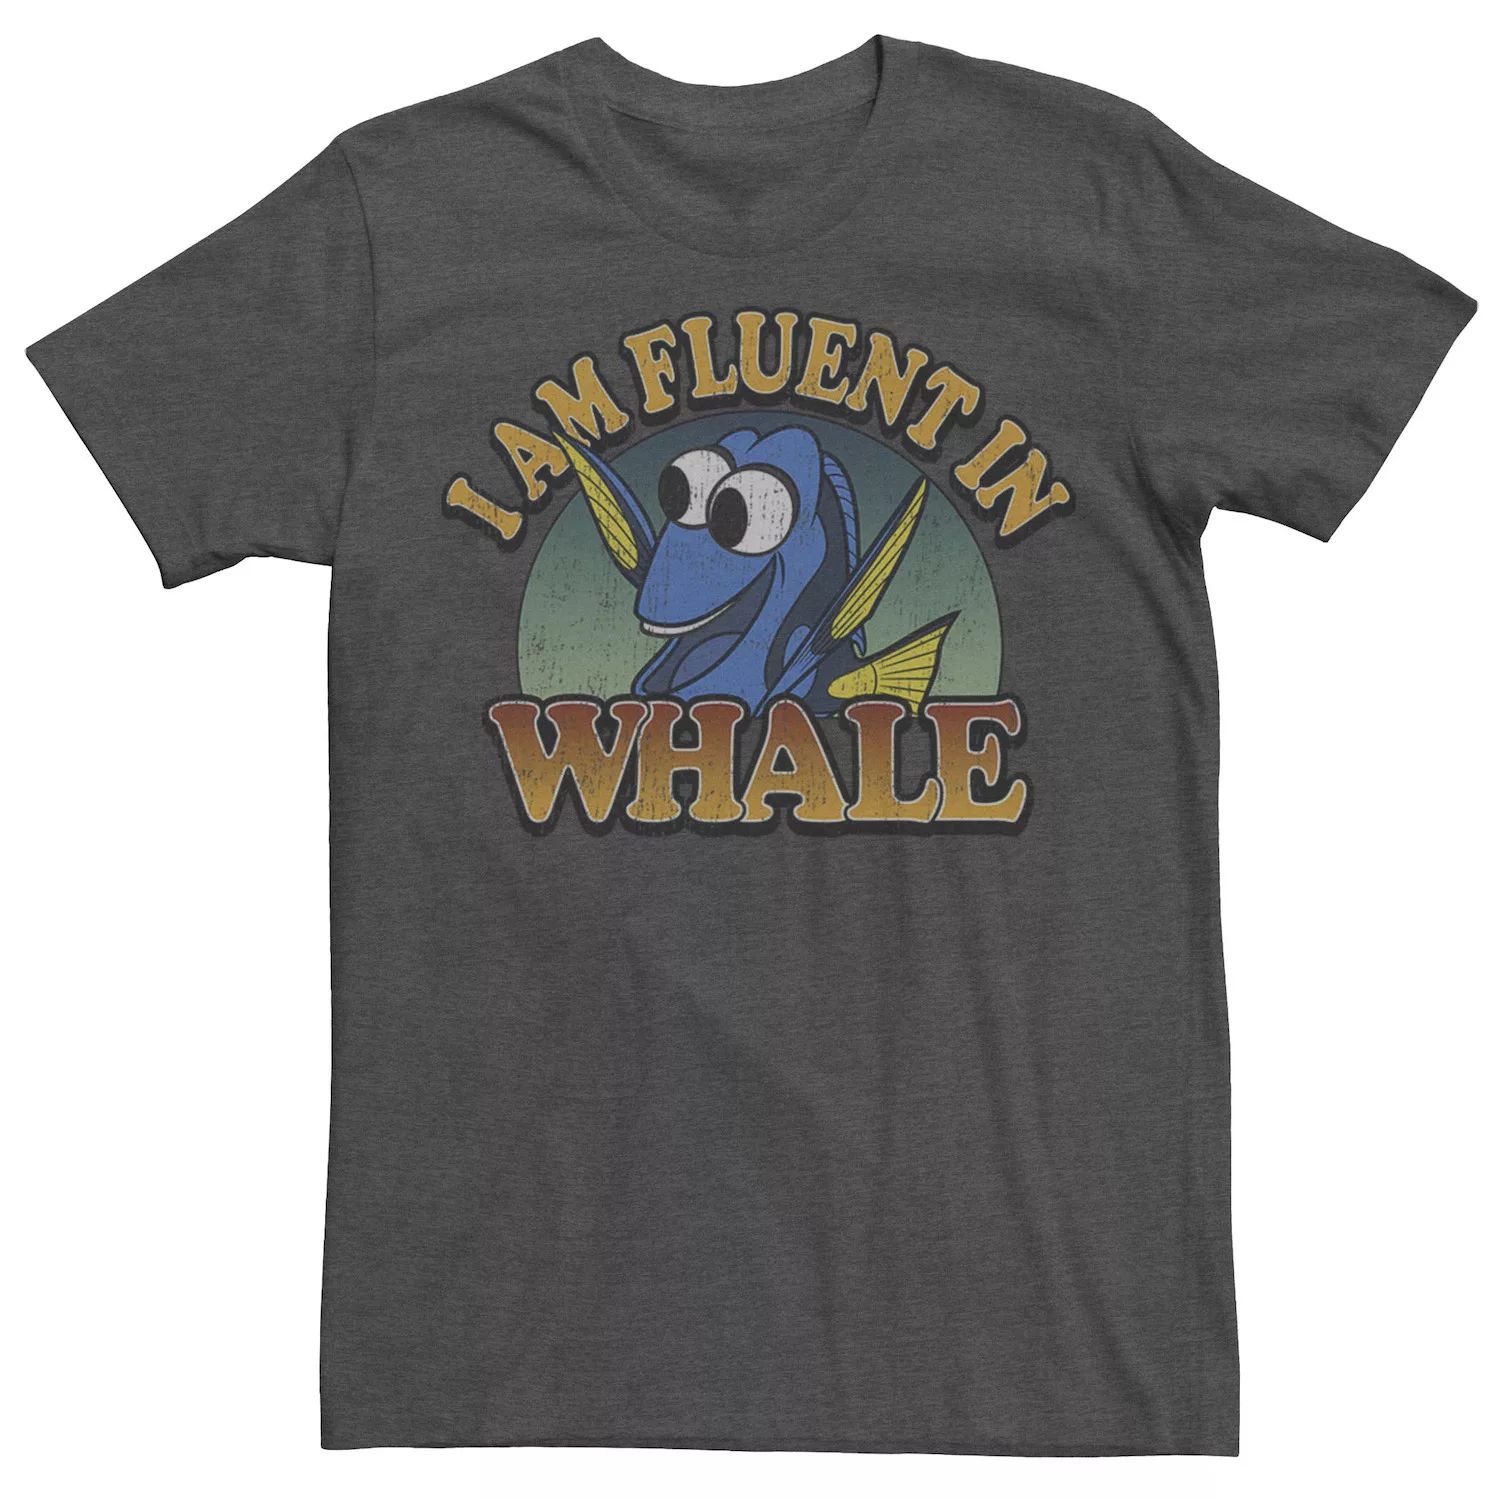 Мужская футболка Disney Finding Dory Fluent в футболке с китом